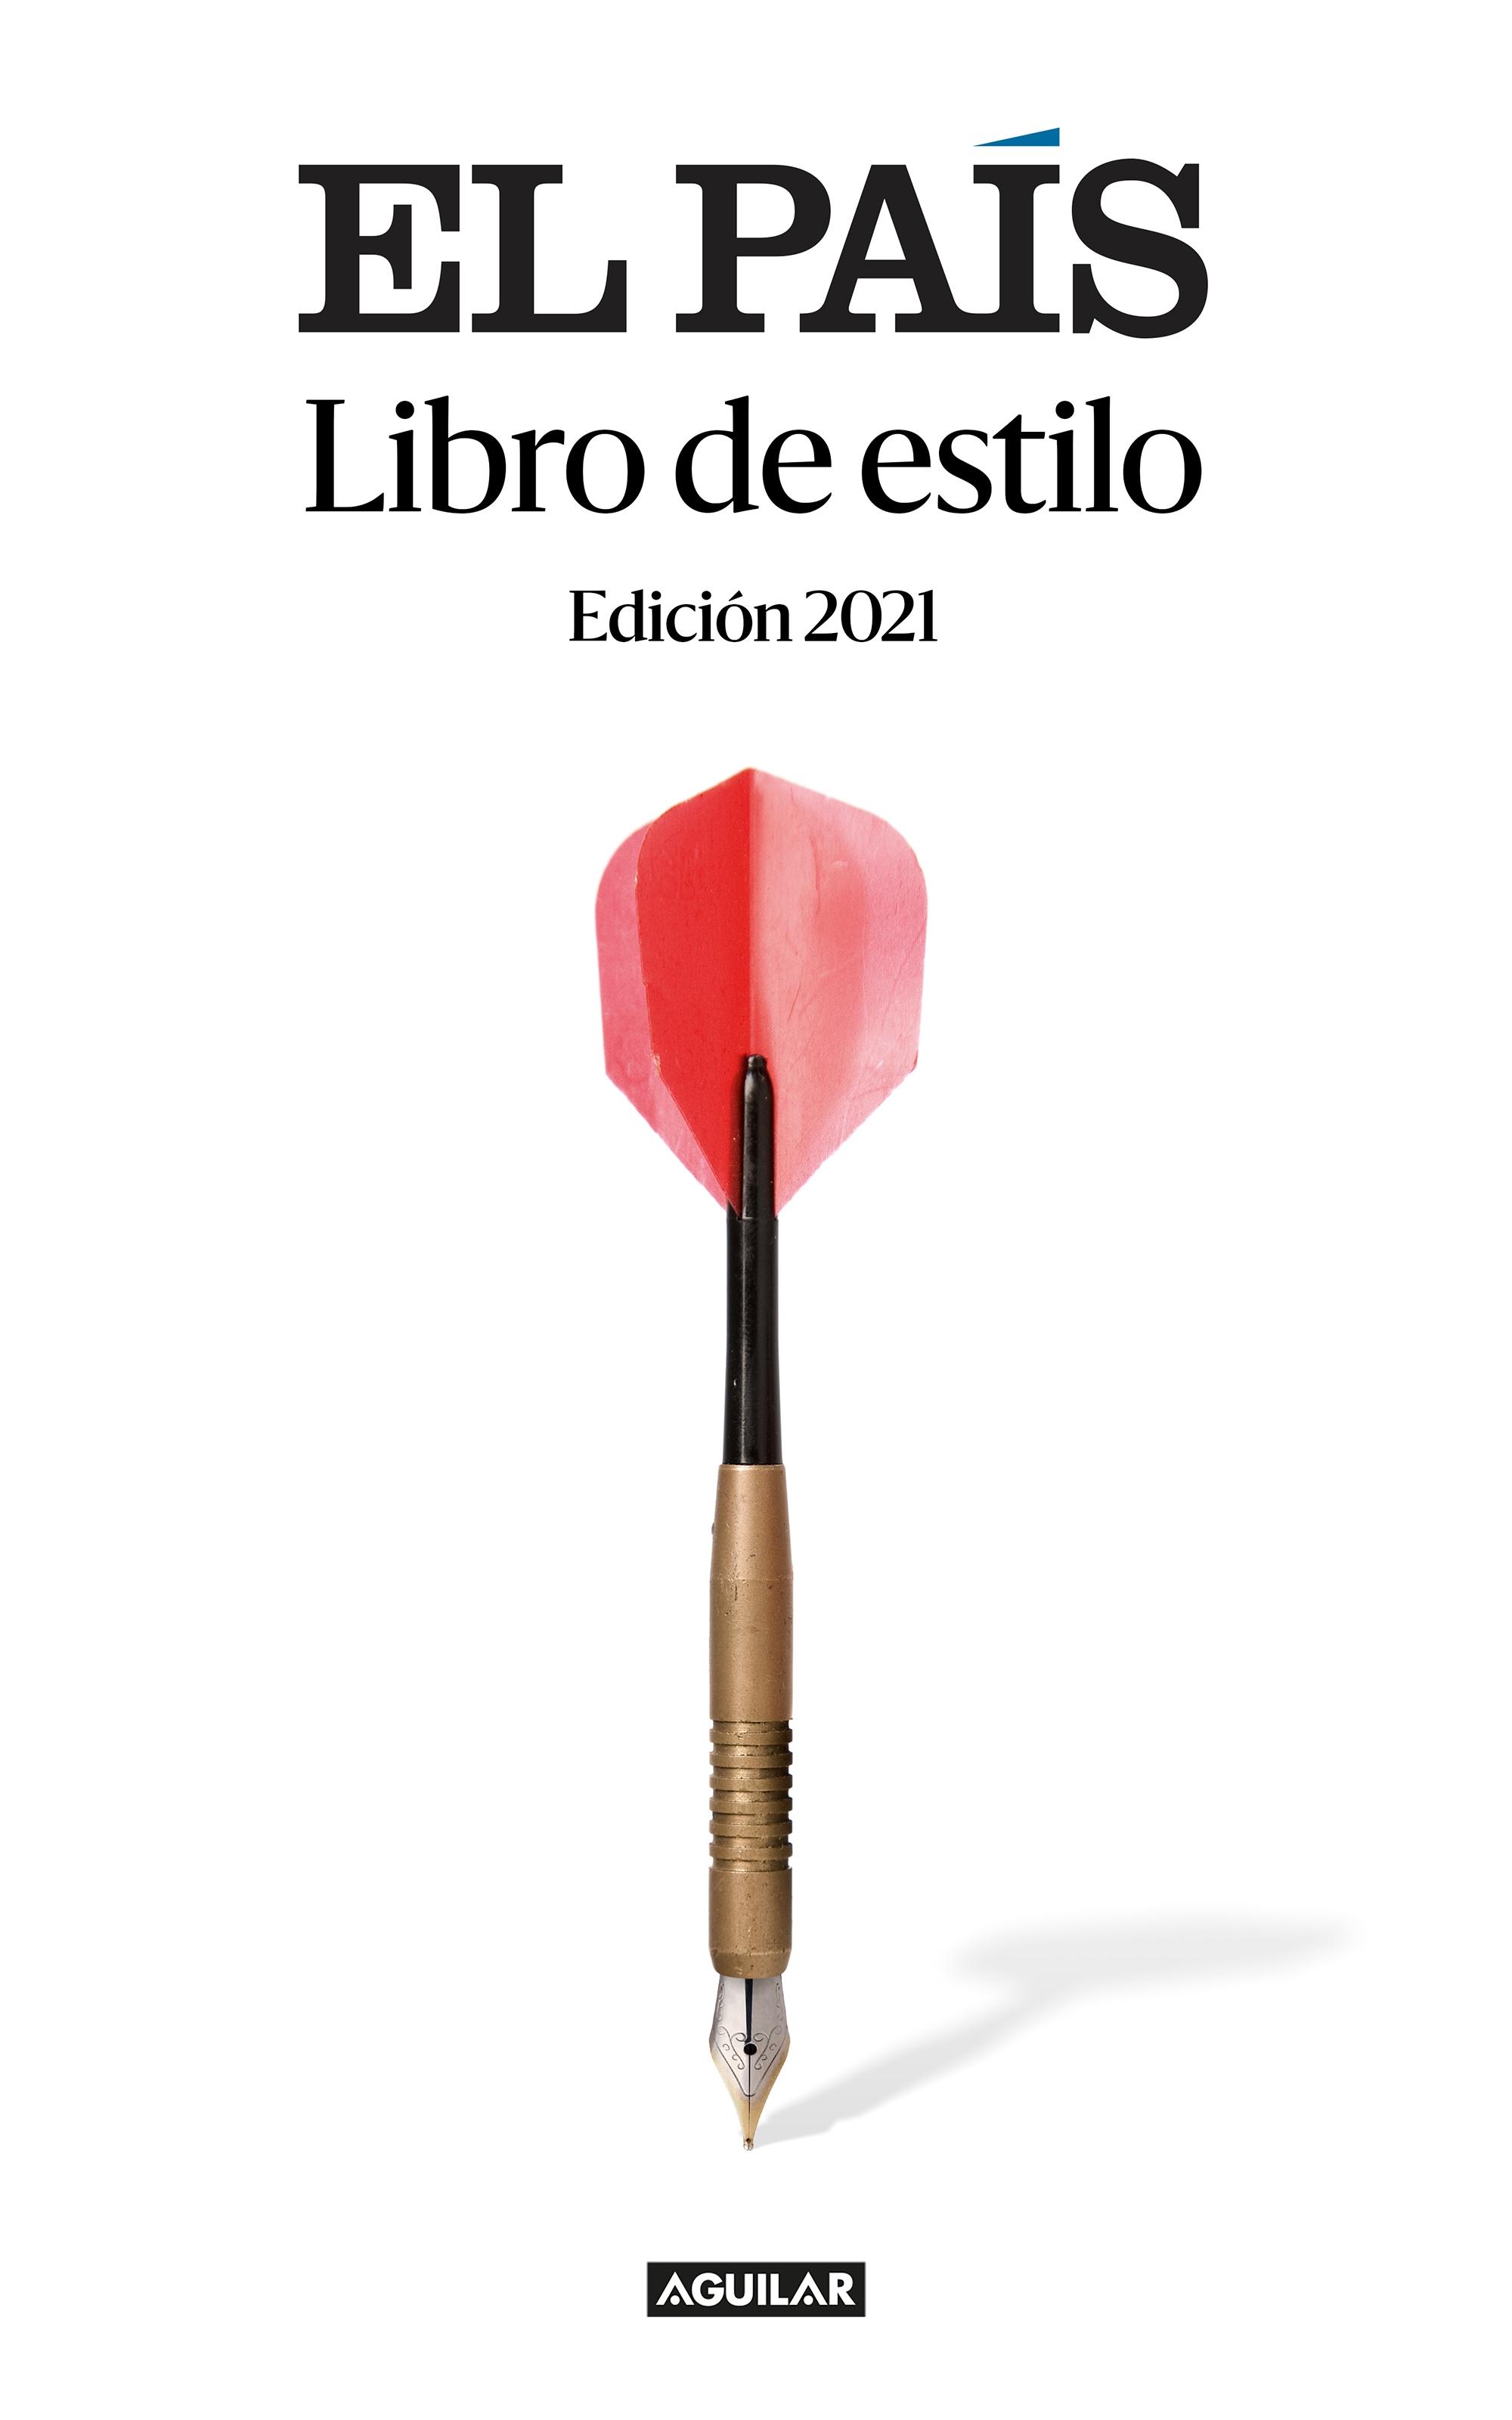 Libro de estilo El País "Una herramienta útil para los lectores; un manual imprescindible para pe"